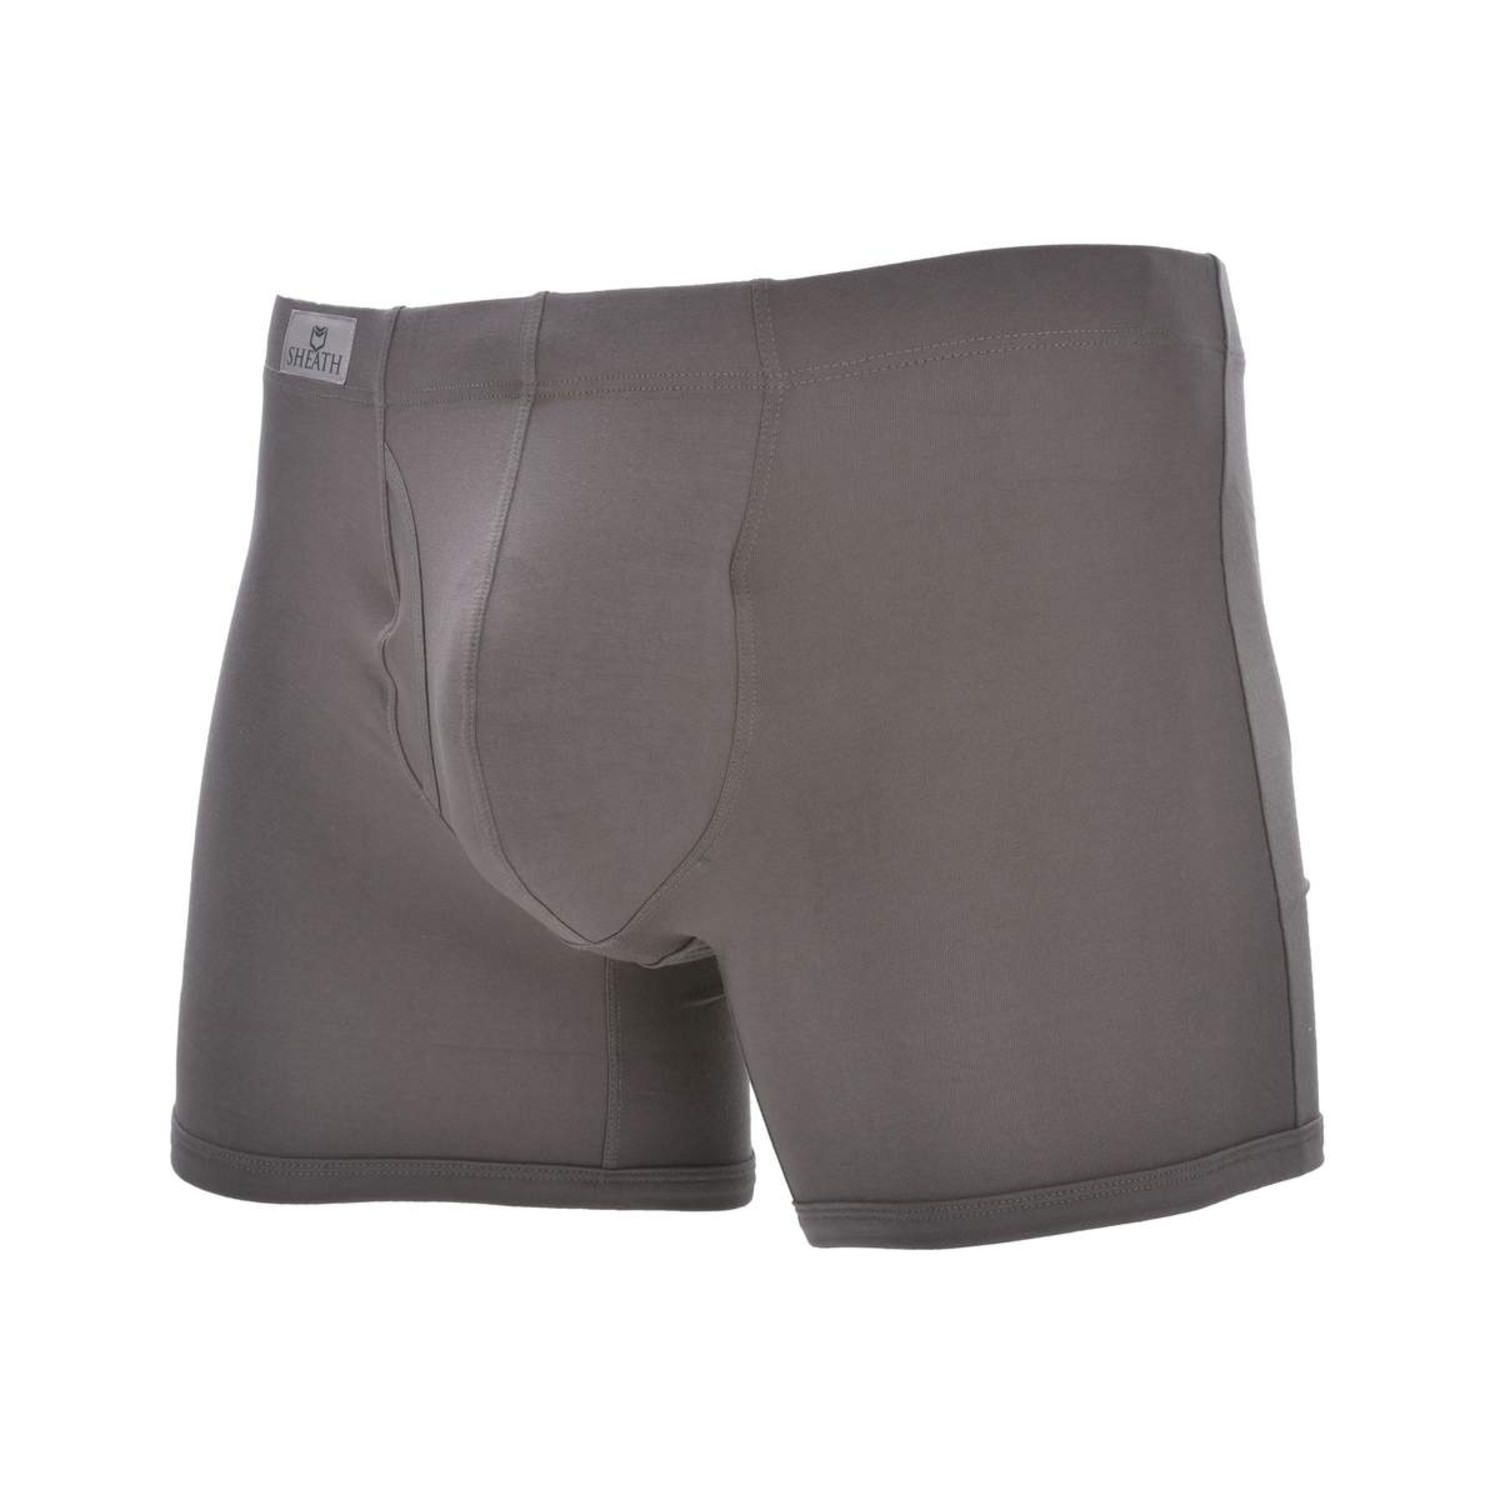 SHEATH 3.21 Men's Dual Pouch Boxer Brief // Gray (S) - Sheath Underwear ...